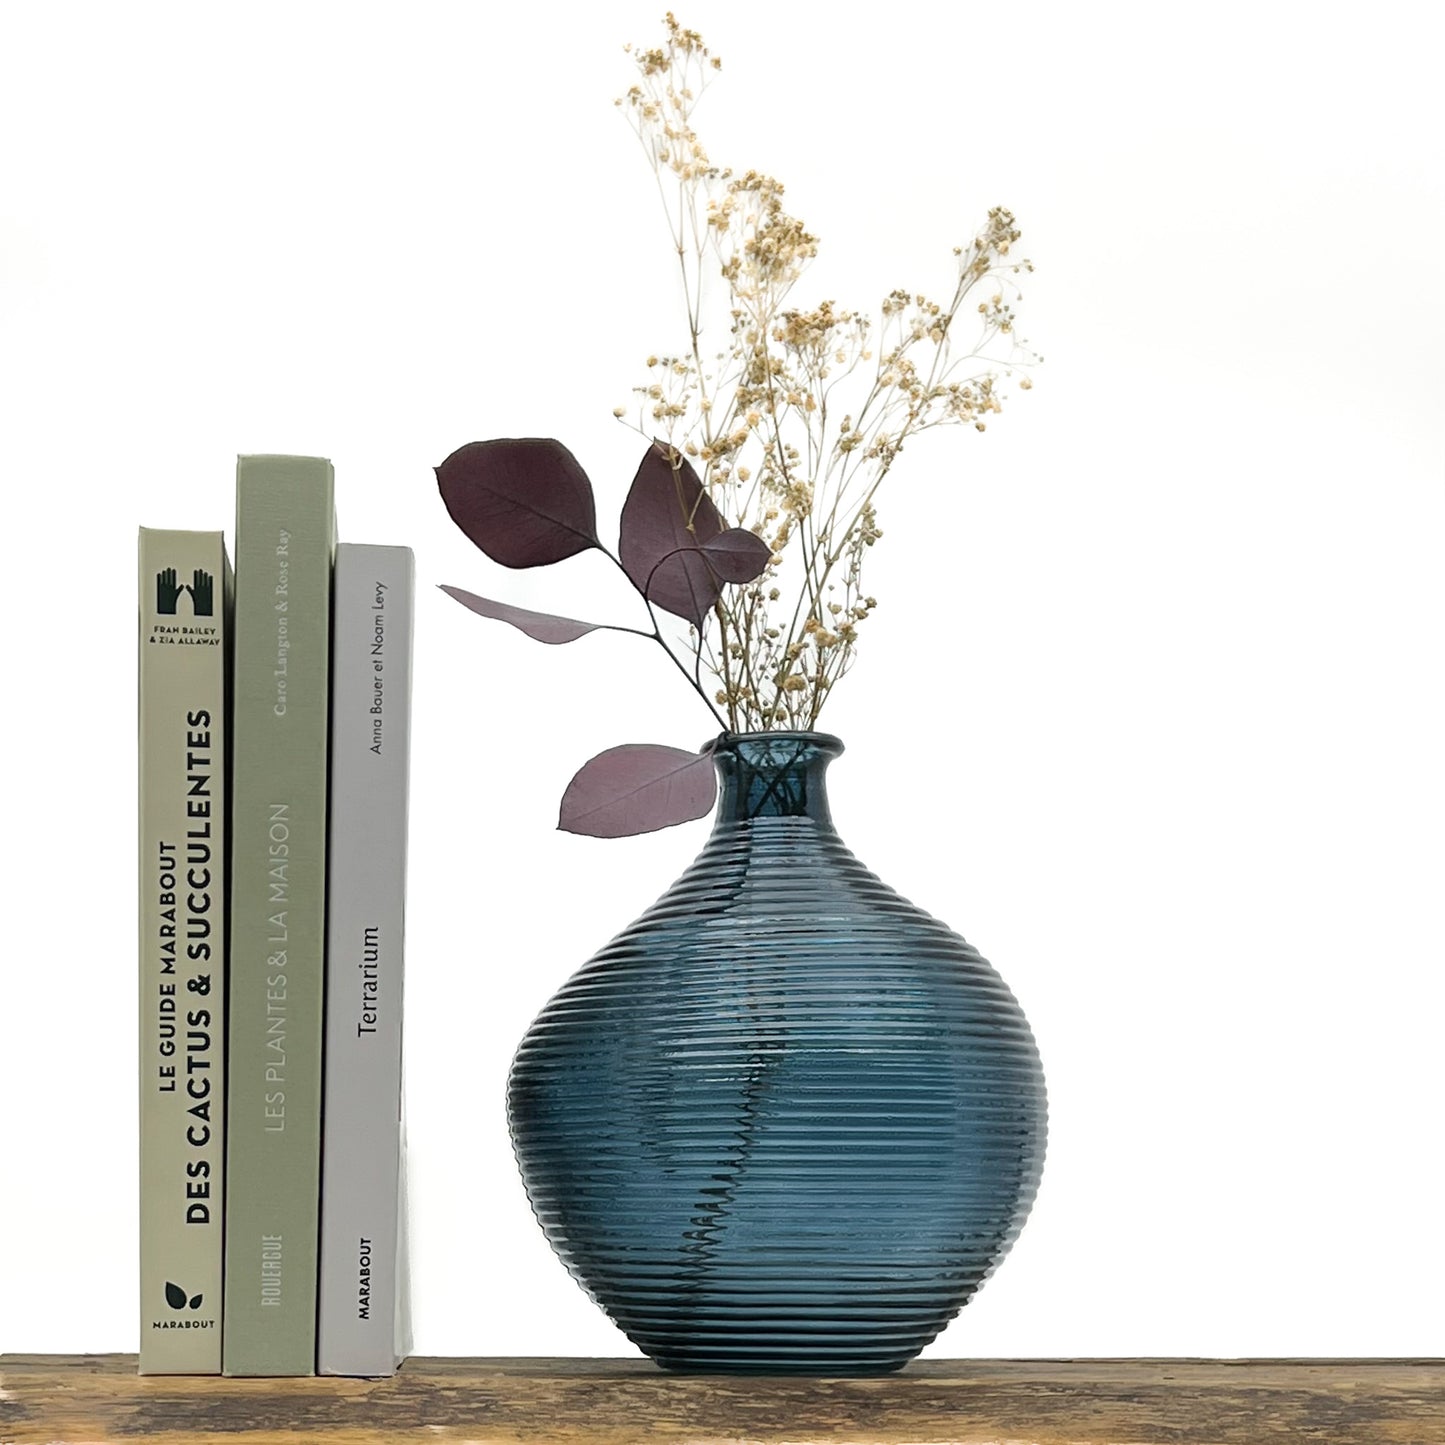 Vase en verre bleu cyclade. Hauteur 20 cm, diamètre 16.5 cm. Design épuré, stries le long du vase. Livré avec fleurs séchées offertes.